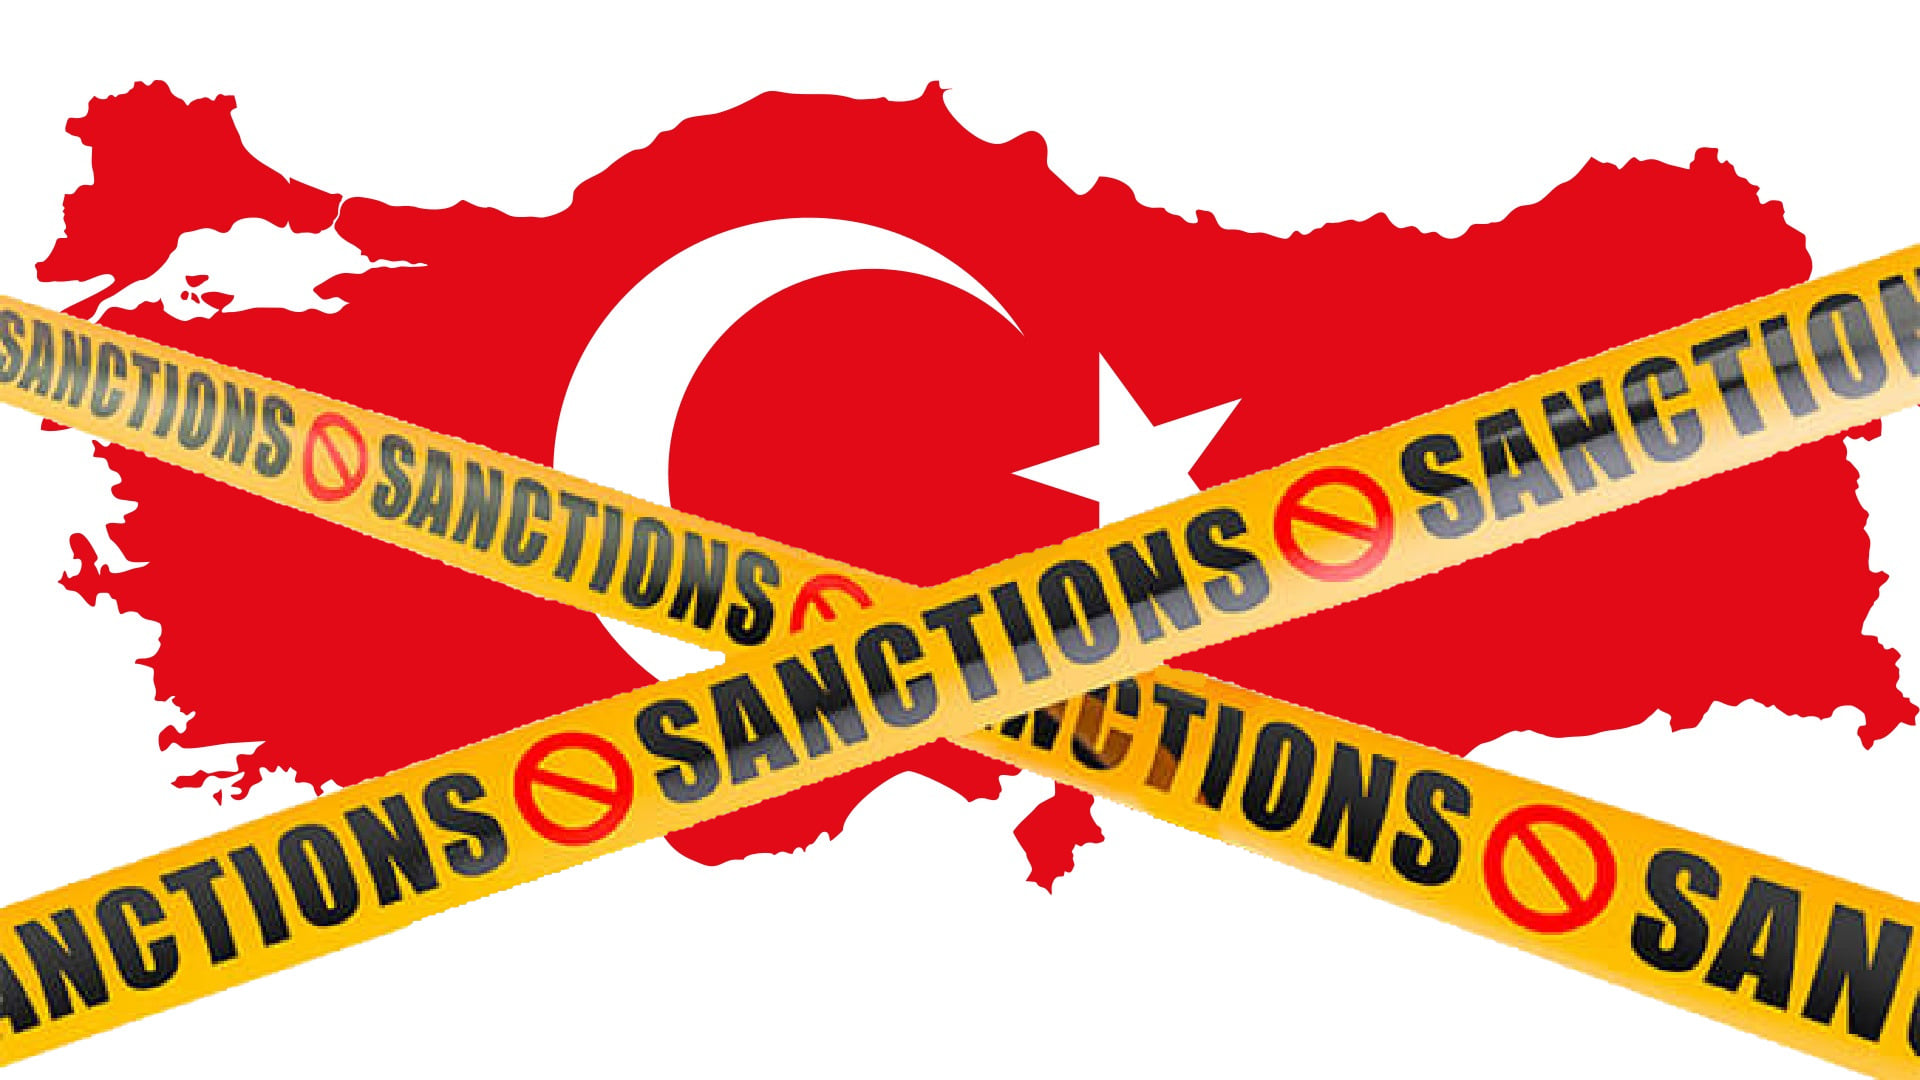 Турецкие товары ввозятся в Армению под видом товаров из других стран: экономист